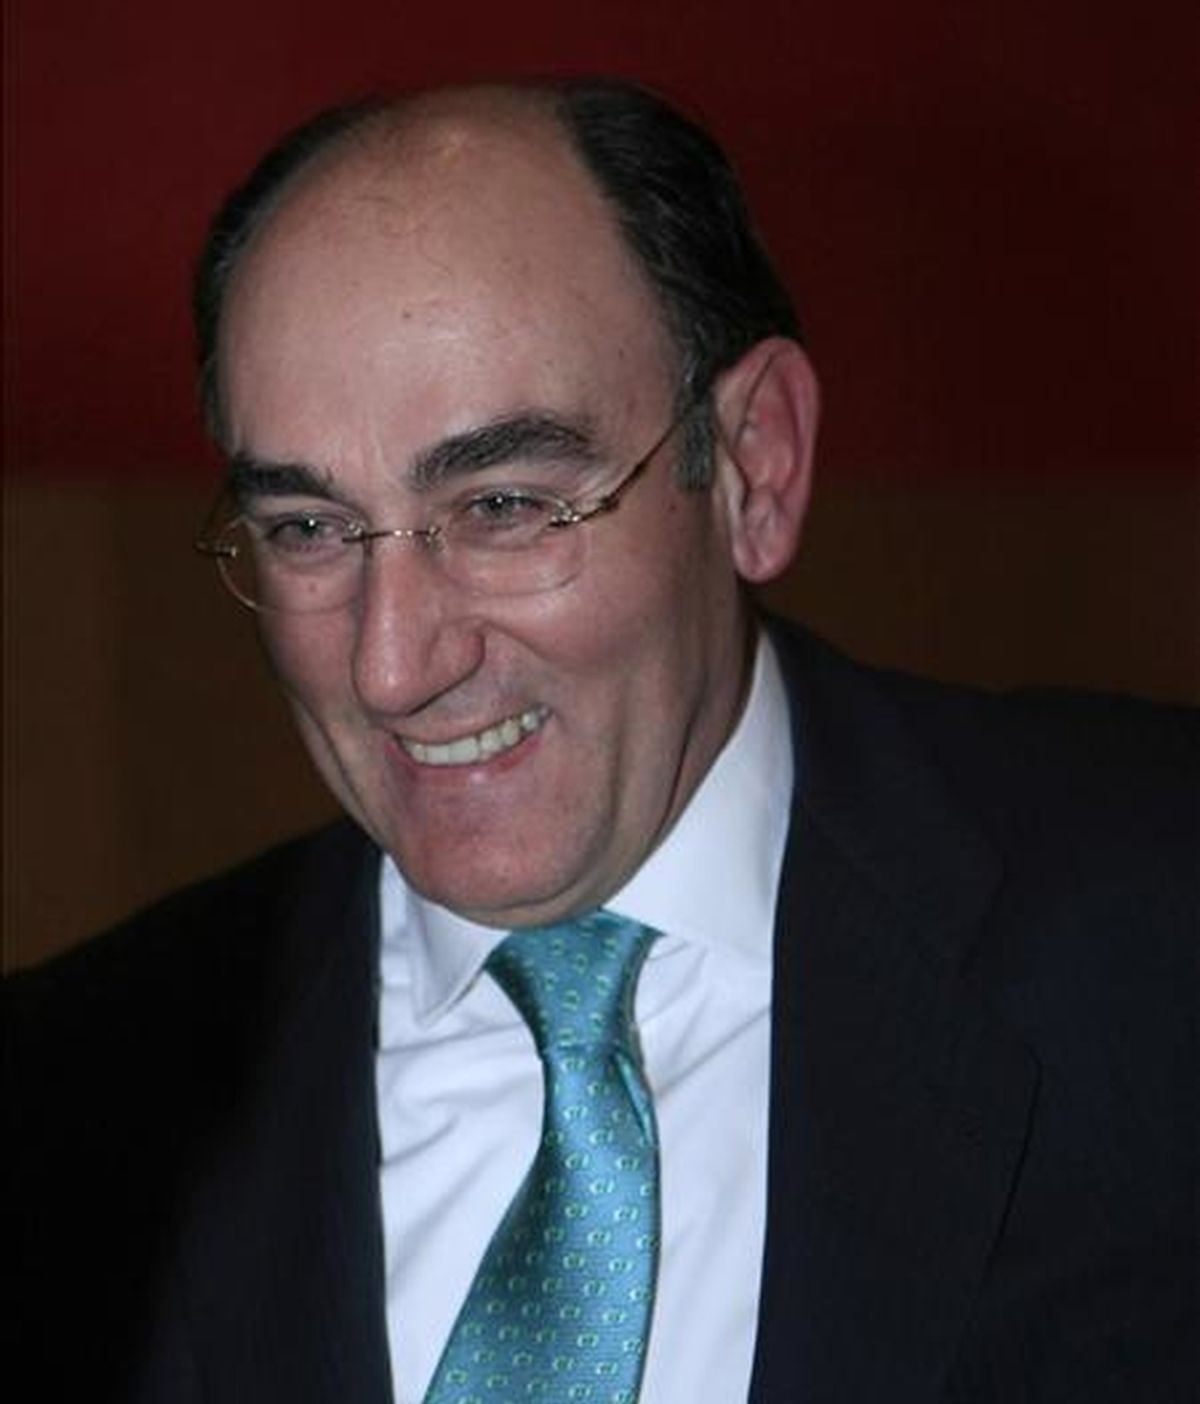 El presidente de Iberdrola, Ignacio Galán, en una imagen del pasado mes de noviembre. EFE/Archivo